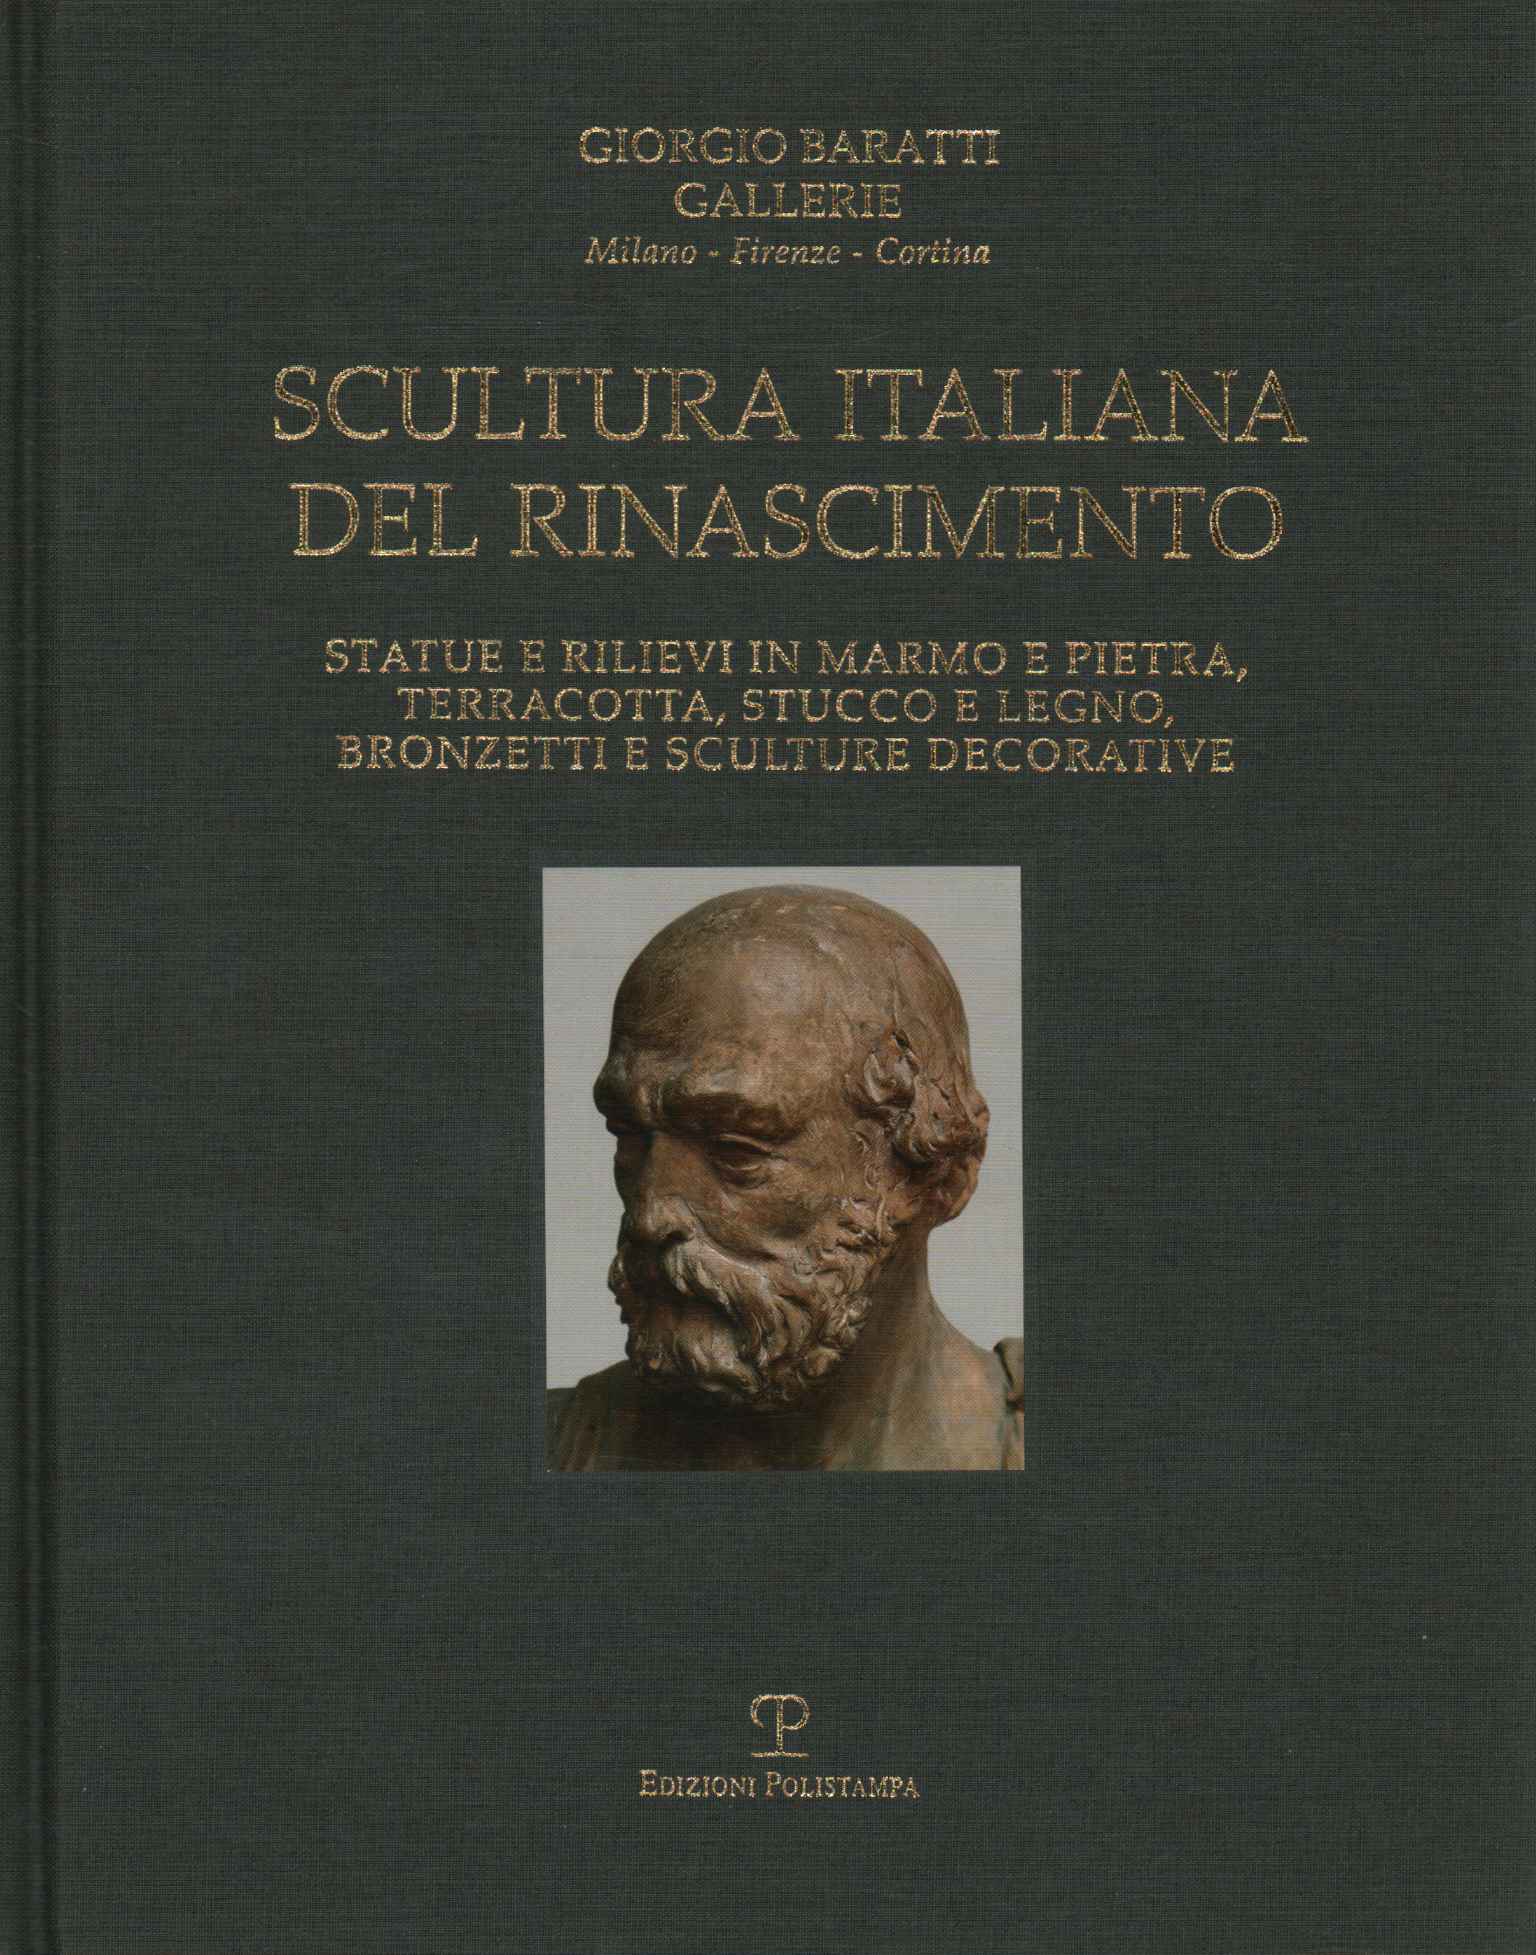 Italian Renaissance sculpture